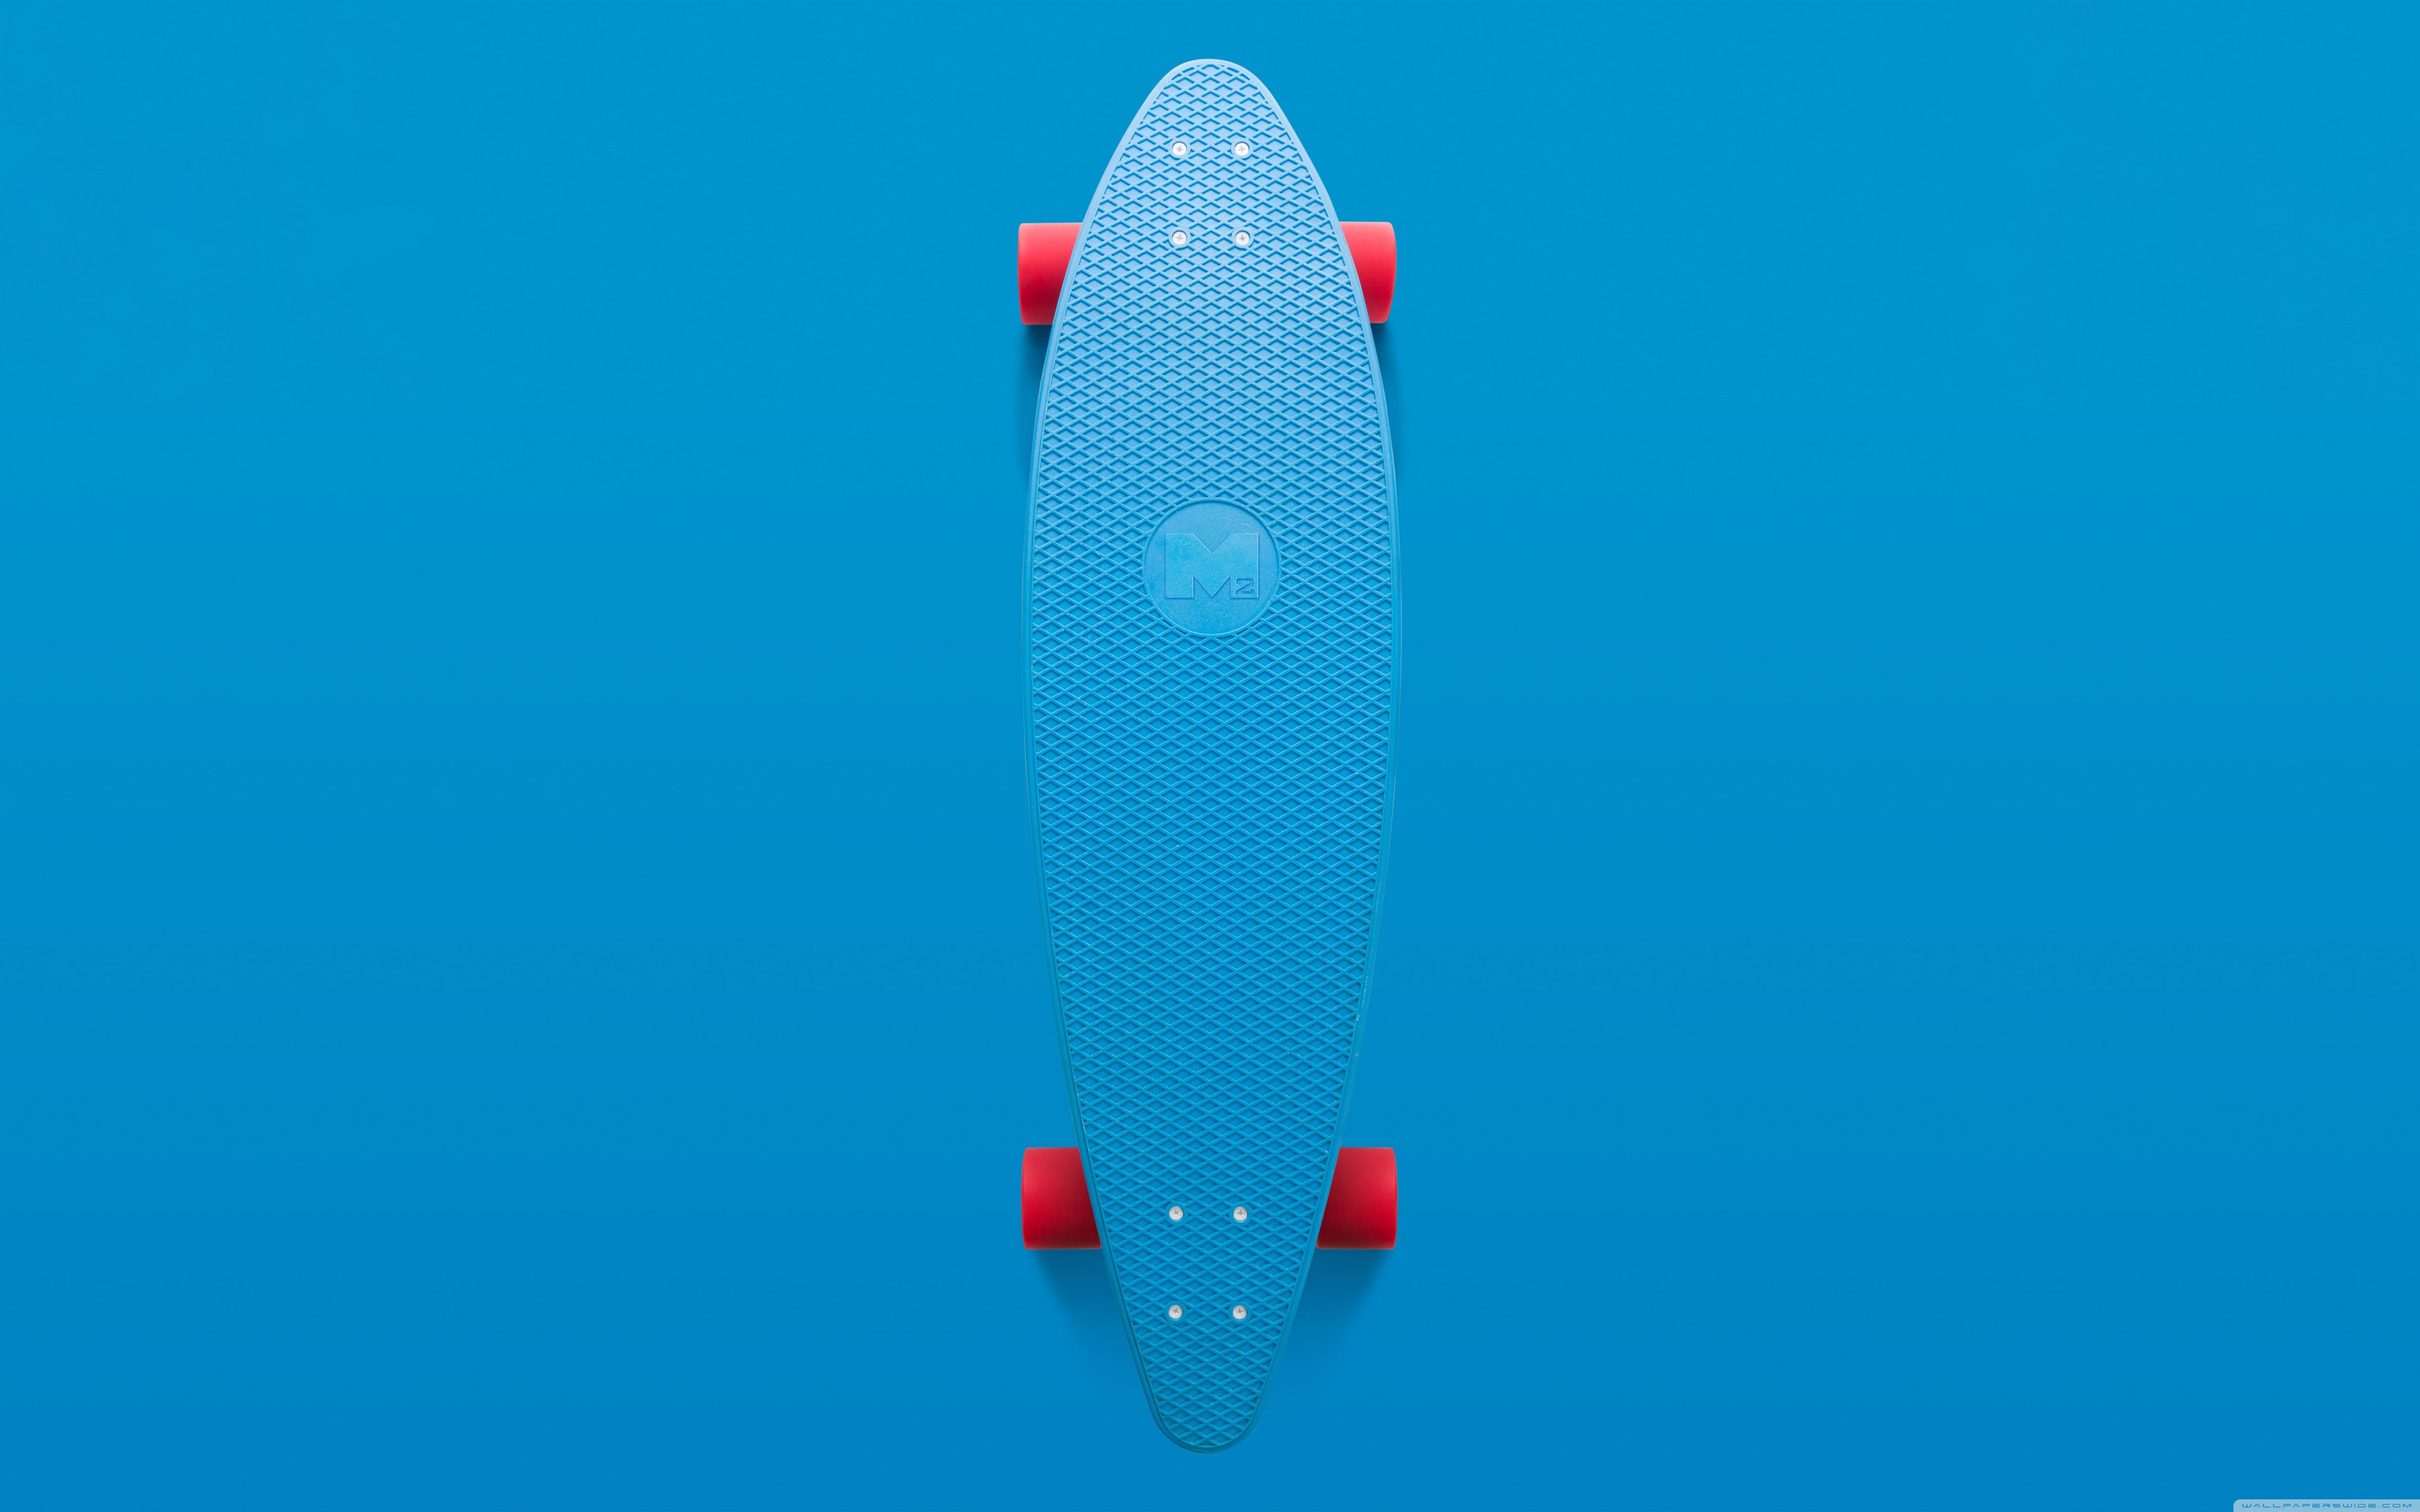 Skateboard Aesthetic Ultra HD Desktop Background Wallpaper for 4K UHD TV, Widescreen & UltraWide Desktop & Laptop, Tablet